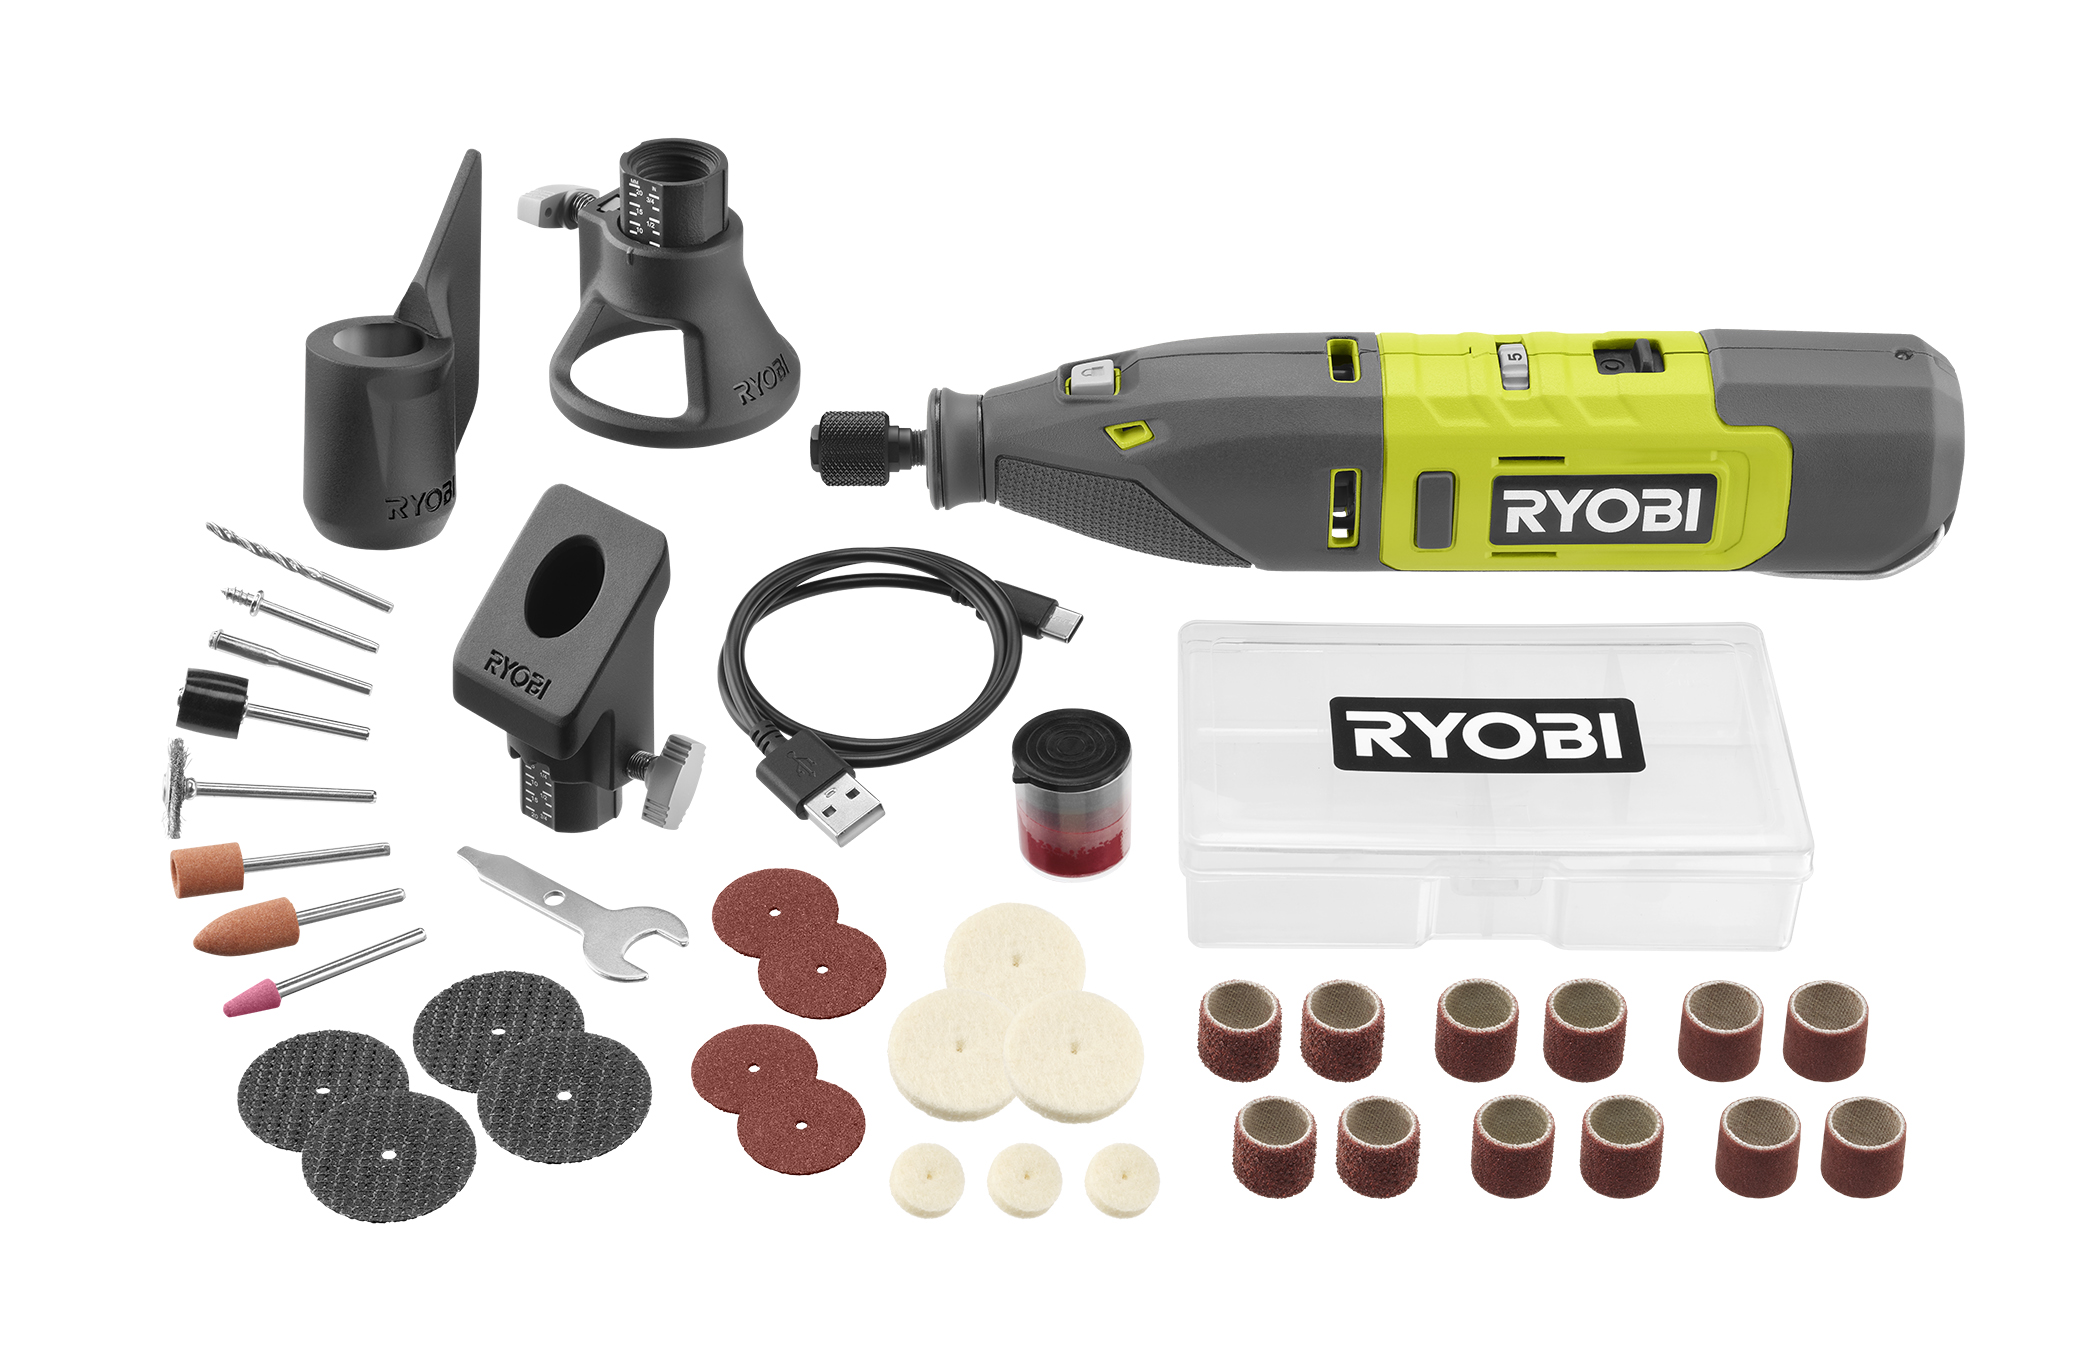 12V Cordless Rotary Tool Kit - RYOBI Tools